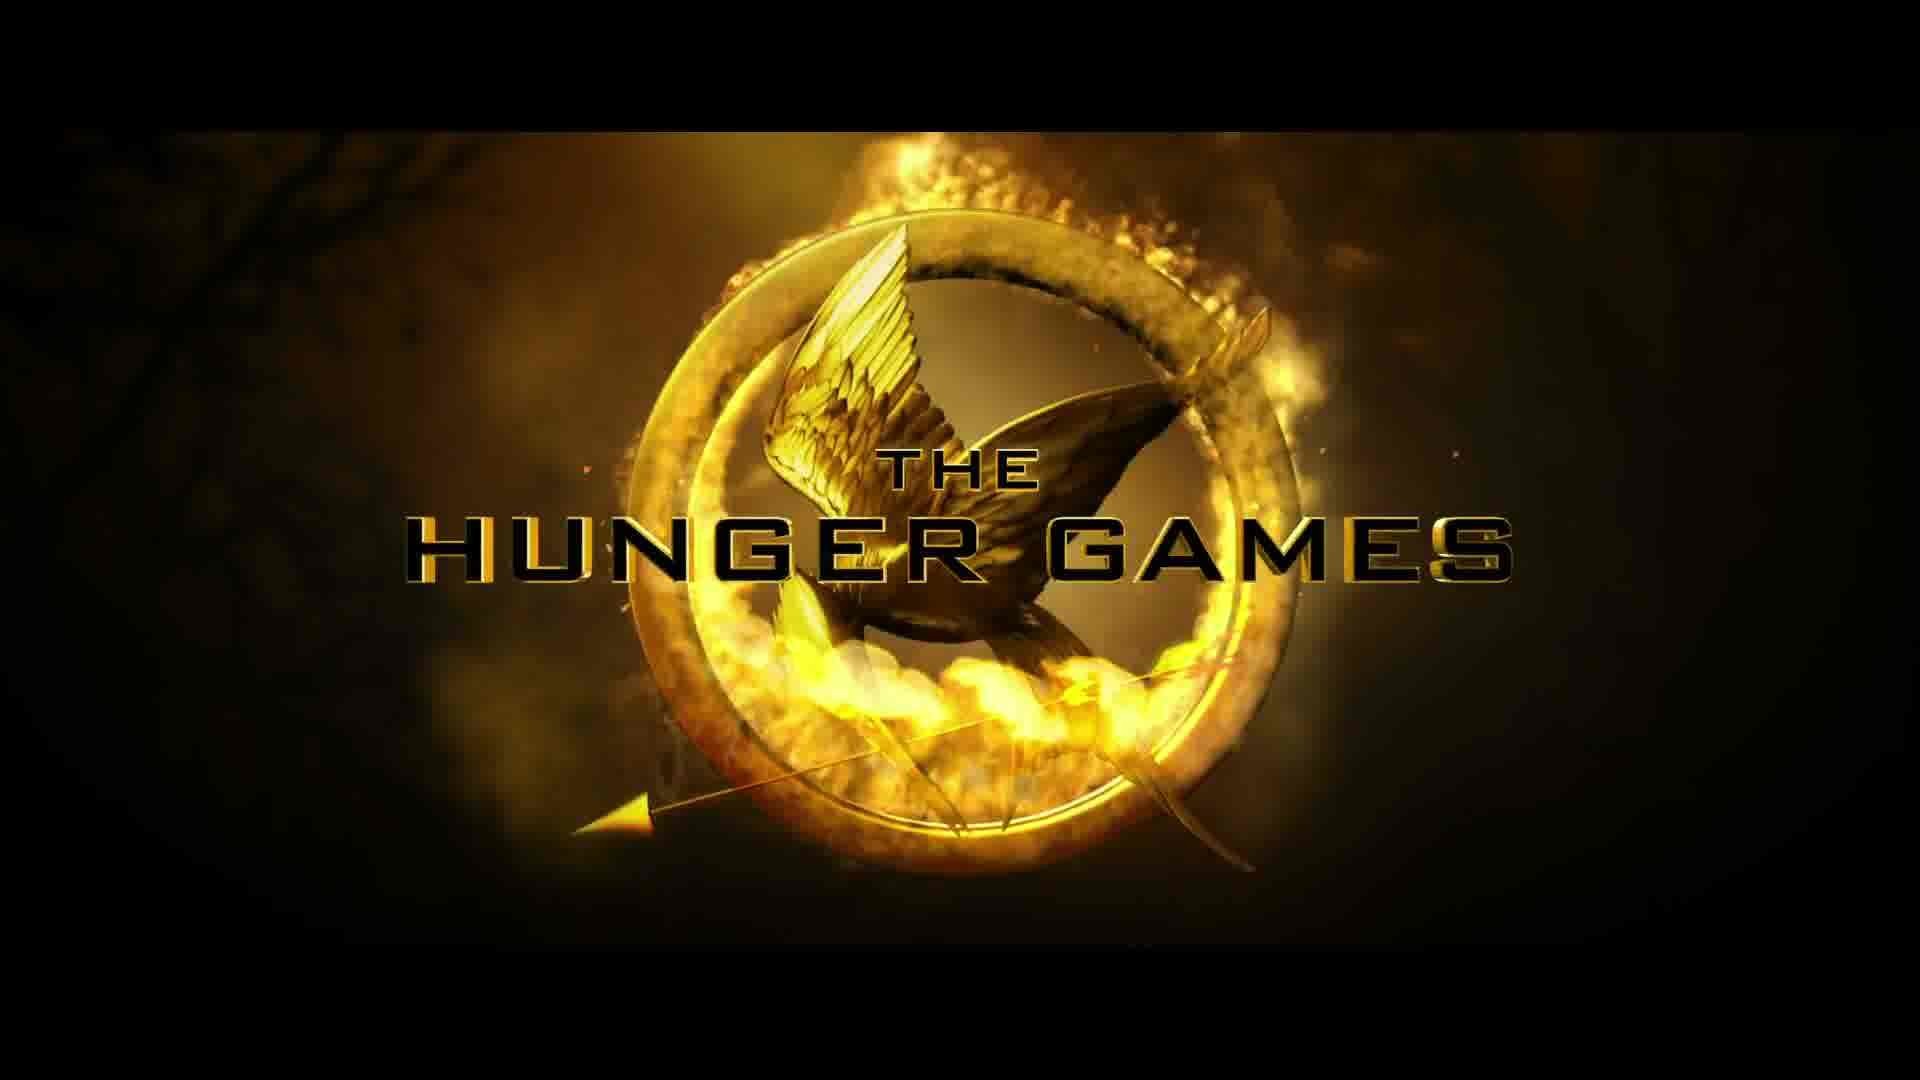 The Hunger Games Wallpaper - Hungergames Wallpaper Hd , HD Wallpaper & Backgrounds